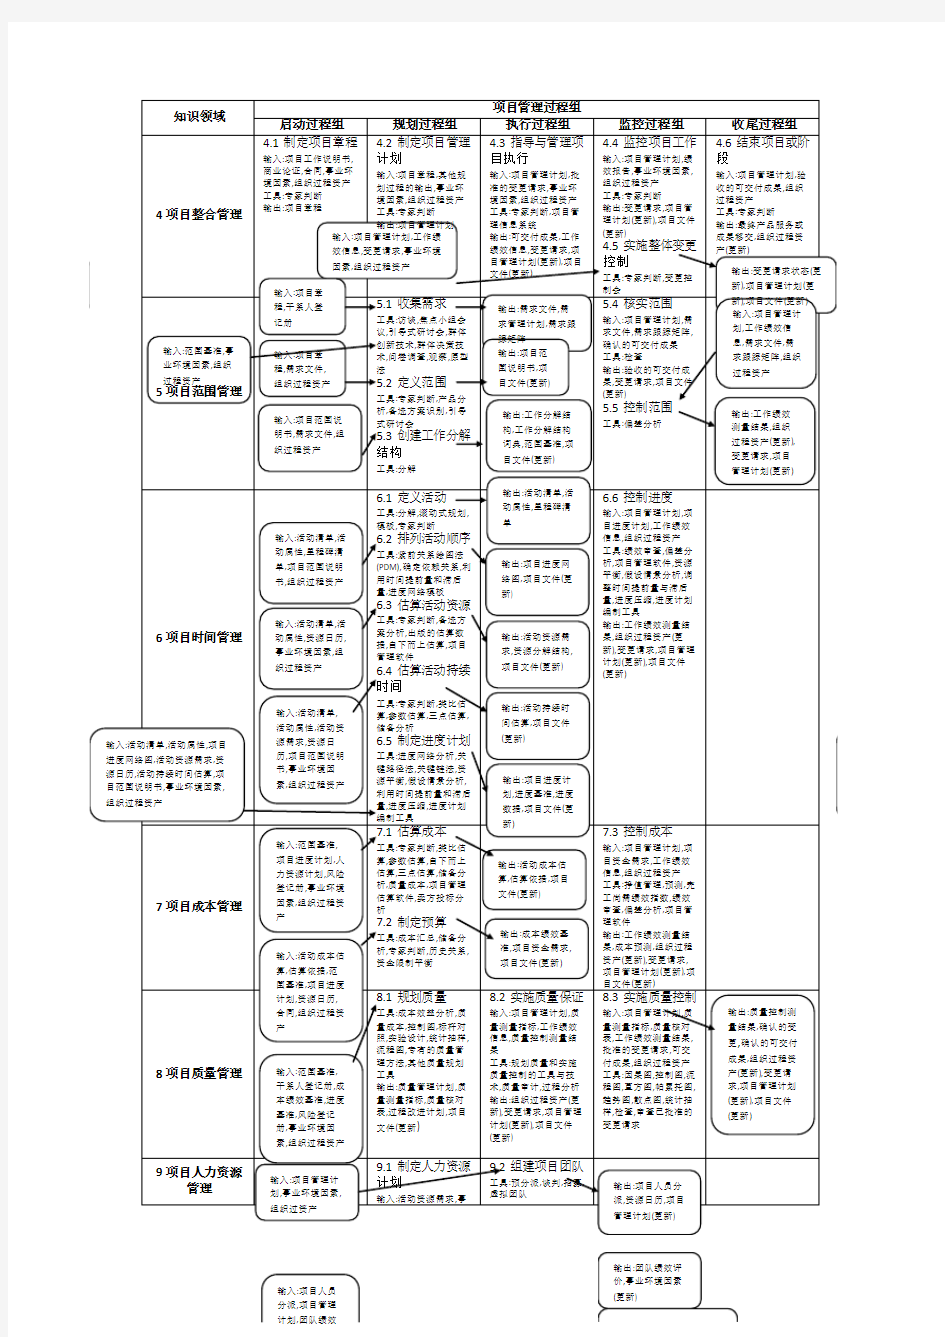 PMP 42个过程及输入工具输出(打印版本)